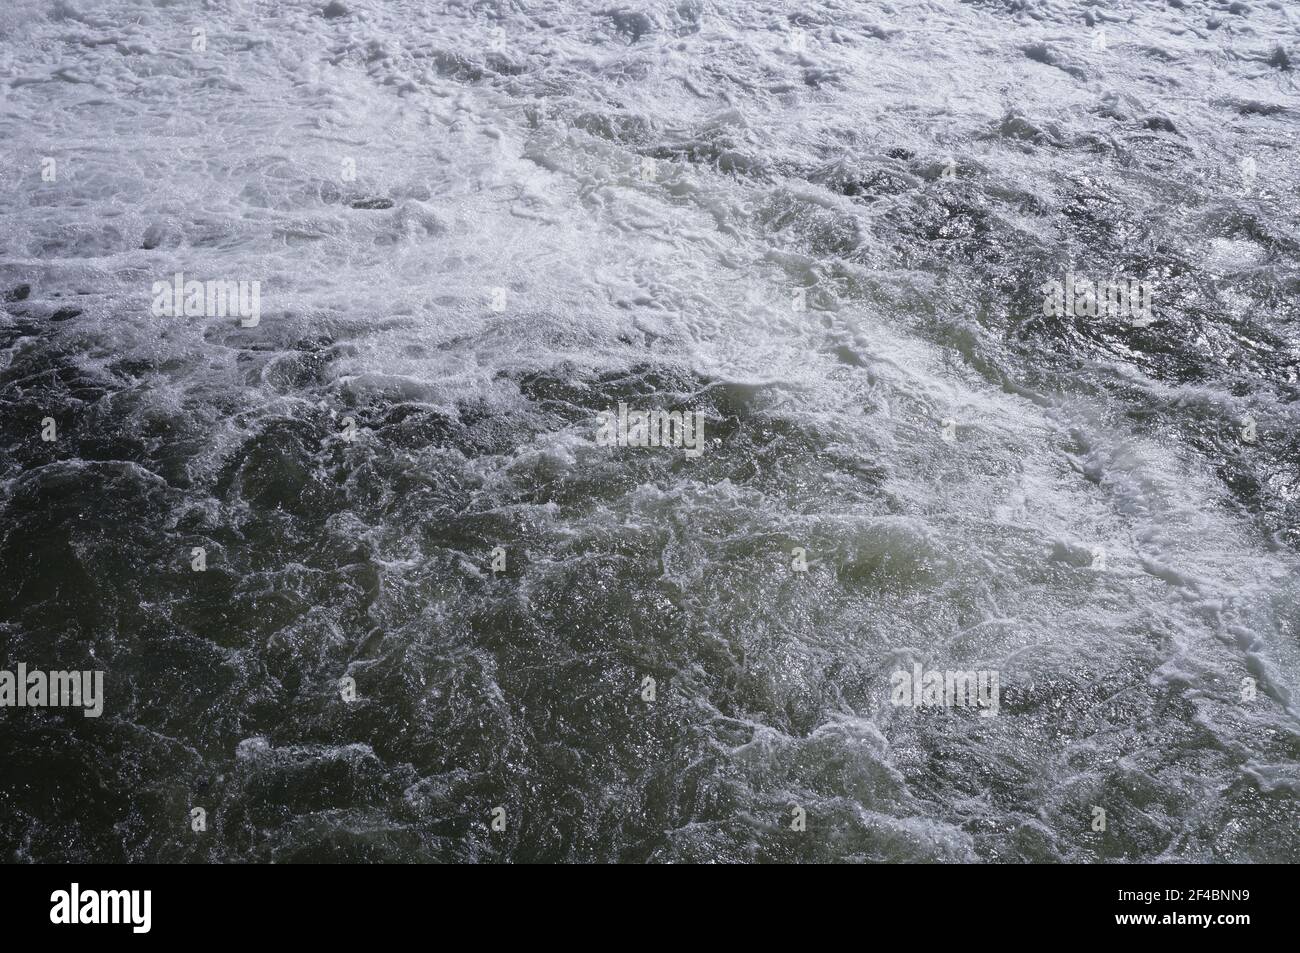 Impressionante flusso d'acqua sul fiume Tarn, alla stregata di Albi, in Francia, dove la forte corrente produce schiuma bianca e potenti turbolenze Foto Stock